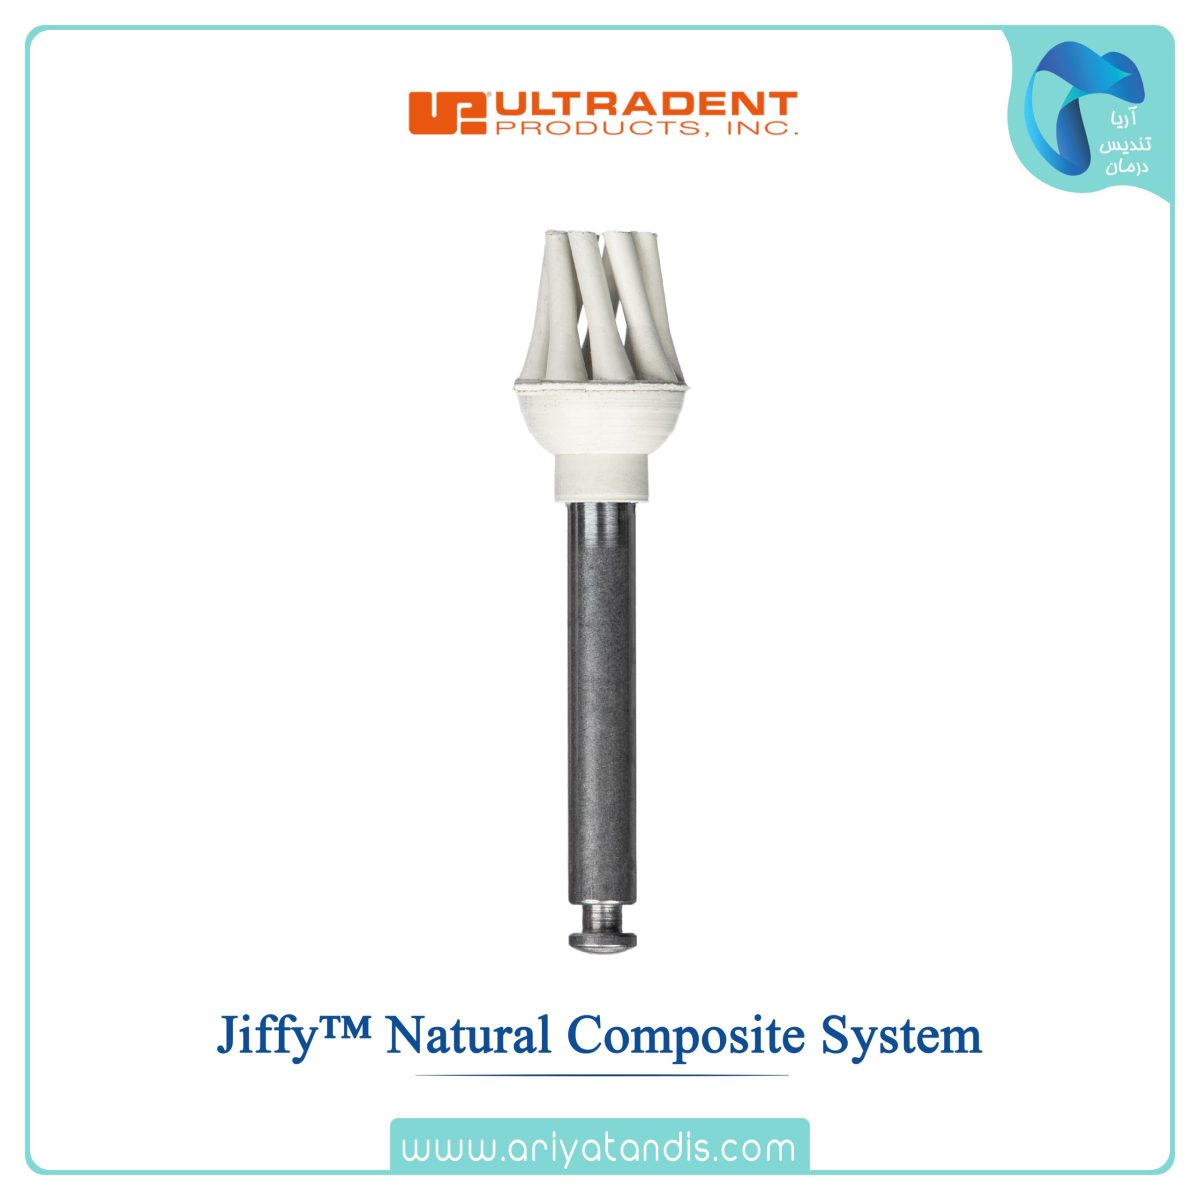 قیمت برس پالیش کامپوزیت اوکلوزال اولترادنت، Jiffy™ Natural Composite System ultradent